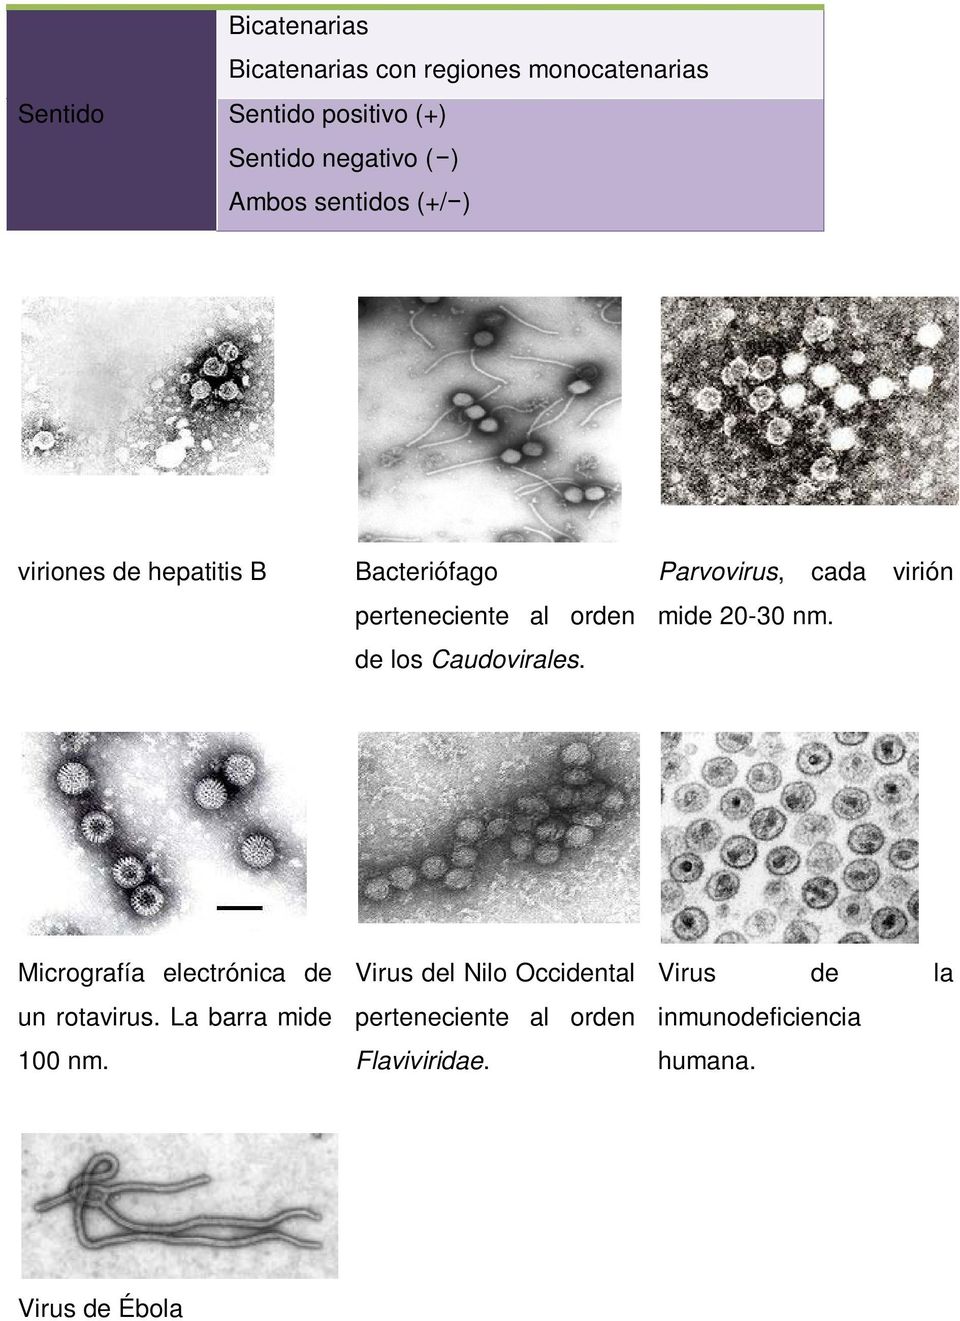 Parvovirus, cada virión mide 20-30 nm. Micrografía electrónica de un rotavirus. La barra mide 100 nm.